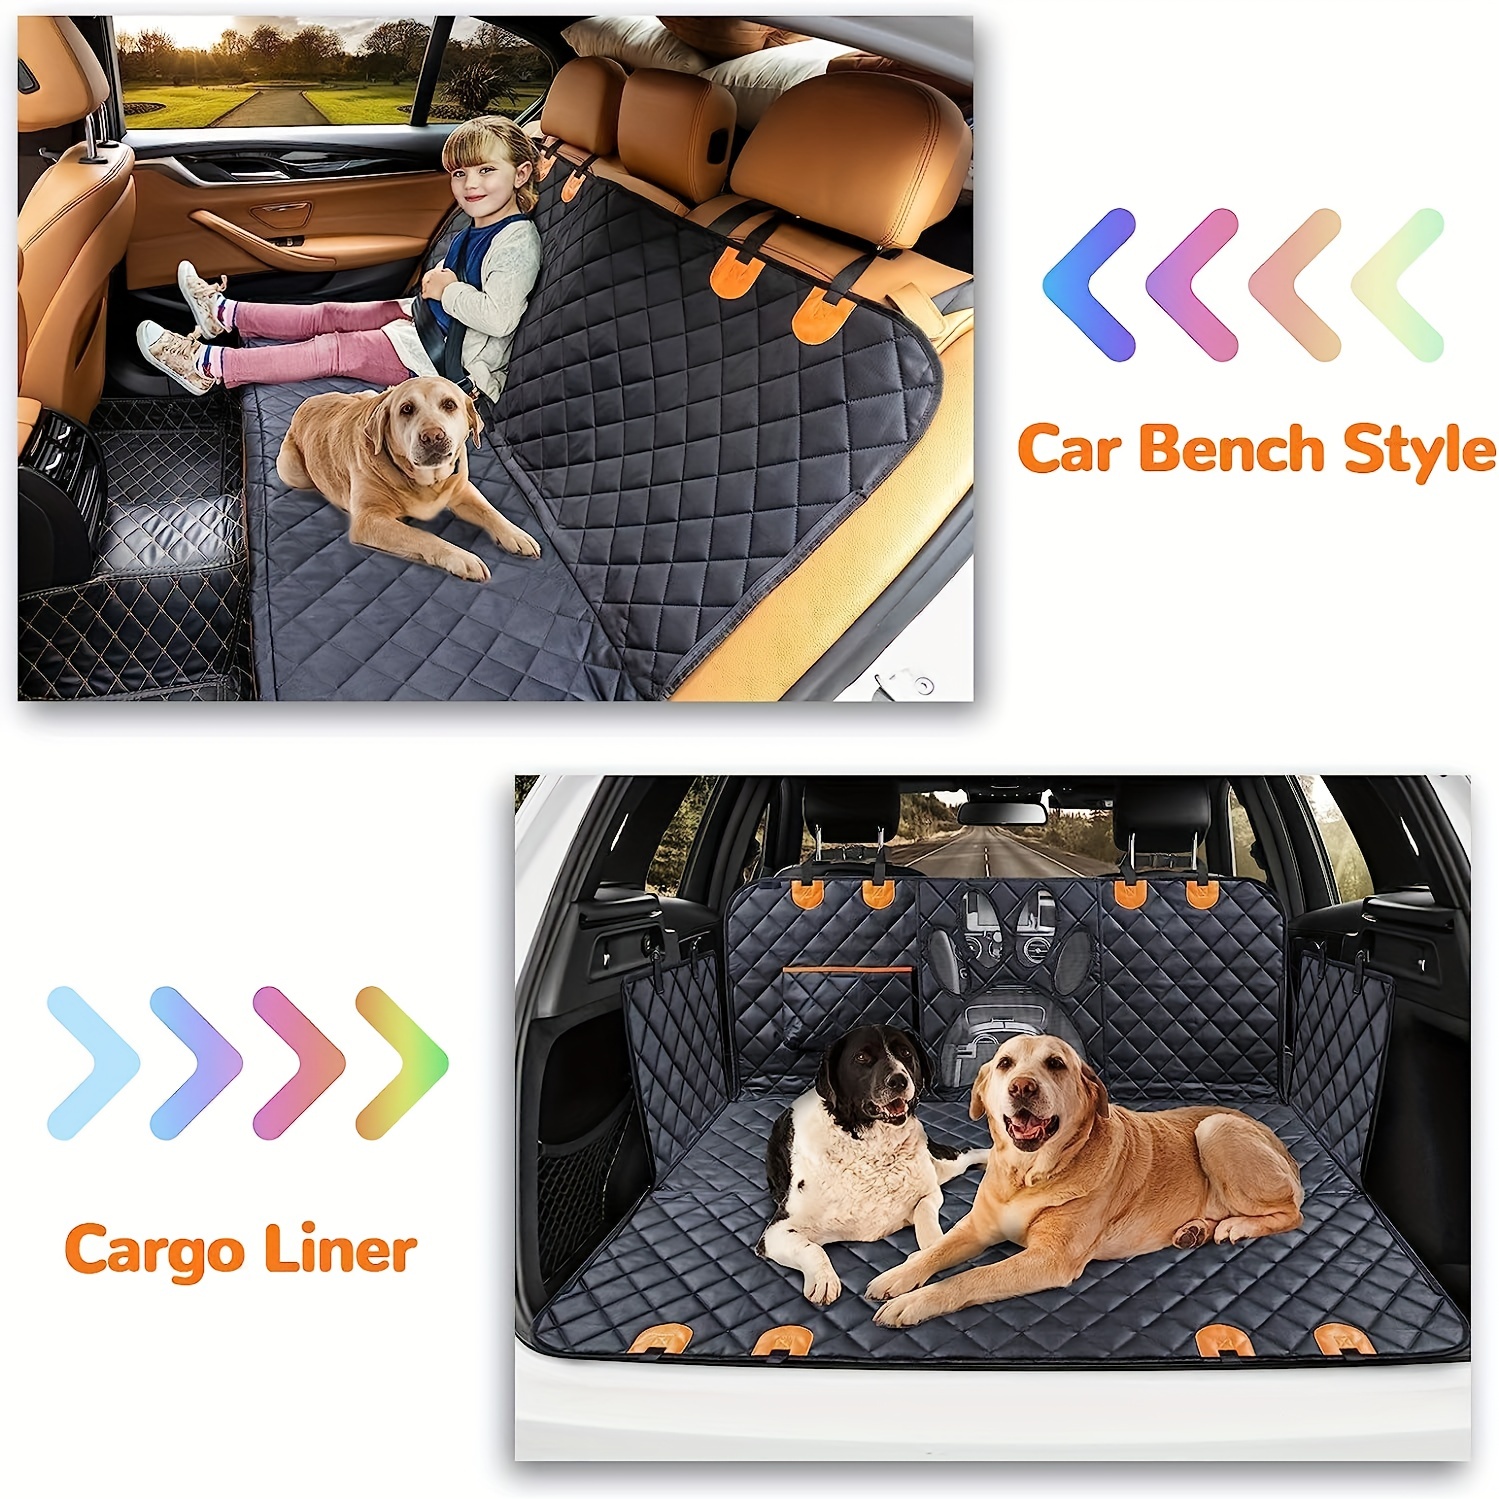 Vailge Bench Hund Autositzbezug für Rücksitz, 100% Wasserdicht Hund Auto  Sitzbezüge, Waschbar Kompatibel Haustier Auto Sitzbezug für Autos SUV